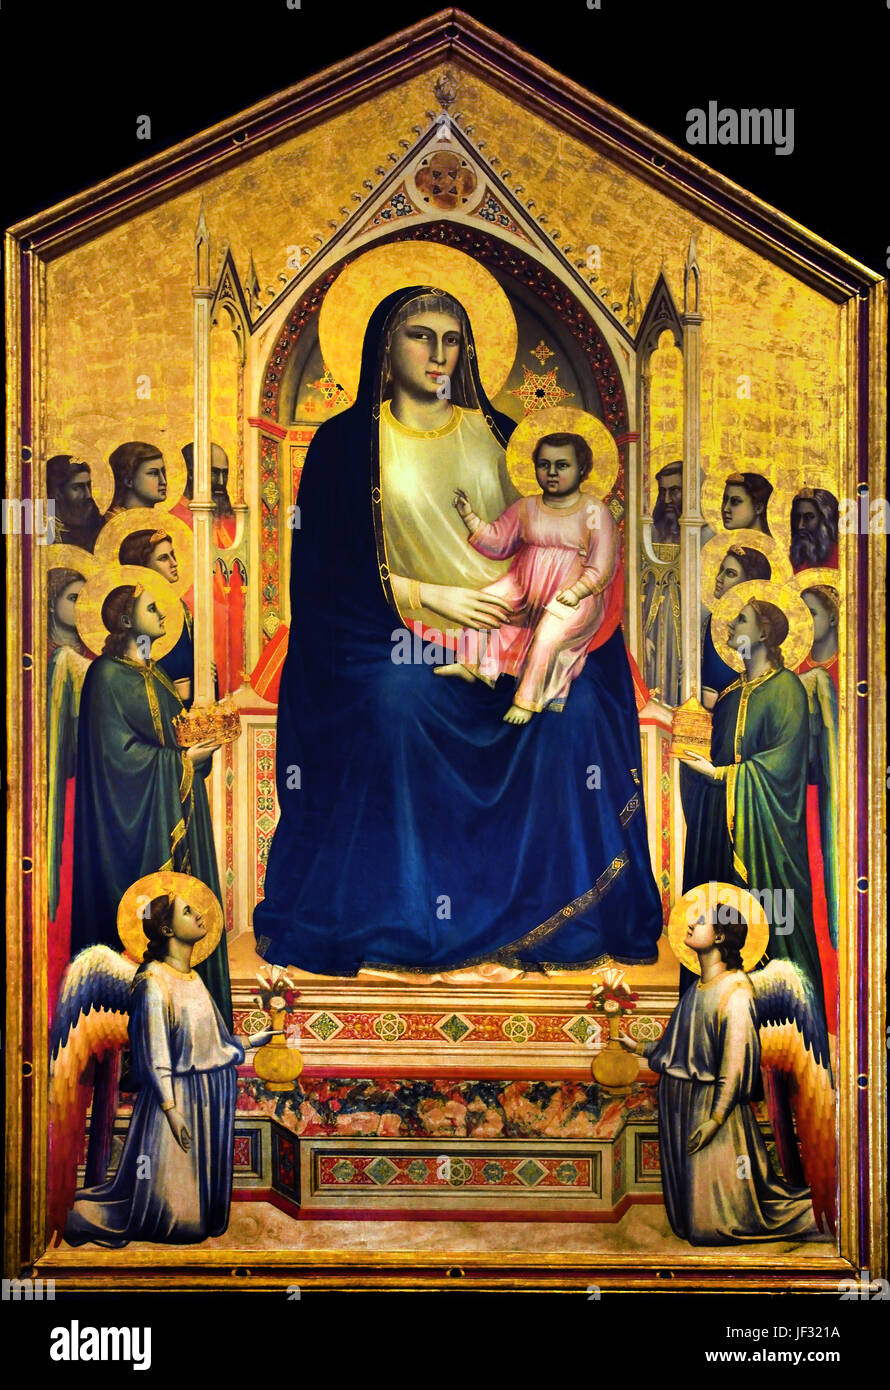 Madonna und Kind mit Engeln und Heiligen 1306 Giotto di Bondone 1266 inthronisiert/7 –1337 Giotto - Giottus war ein italienischer Maler und Architekten von Florenz während des Spätmittelalters. Italien Stockfoto